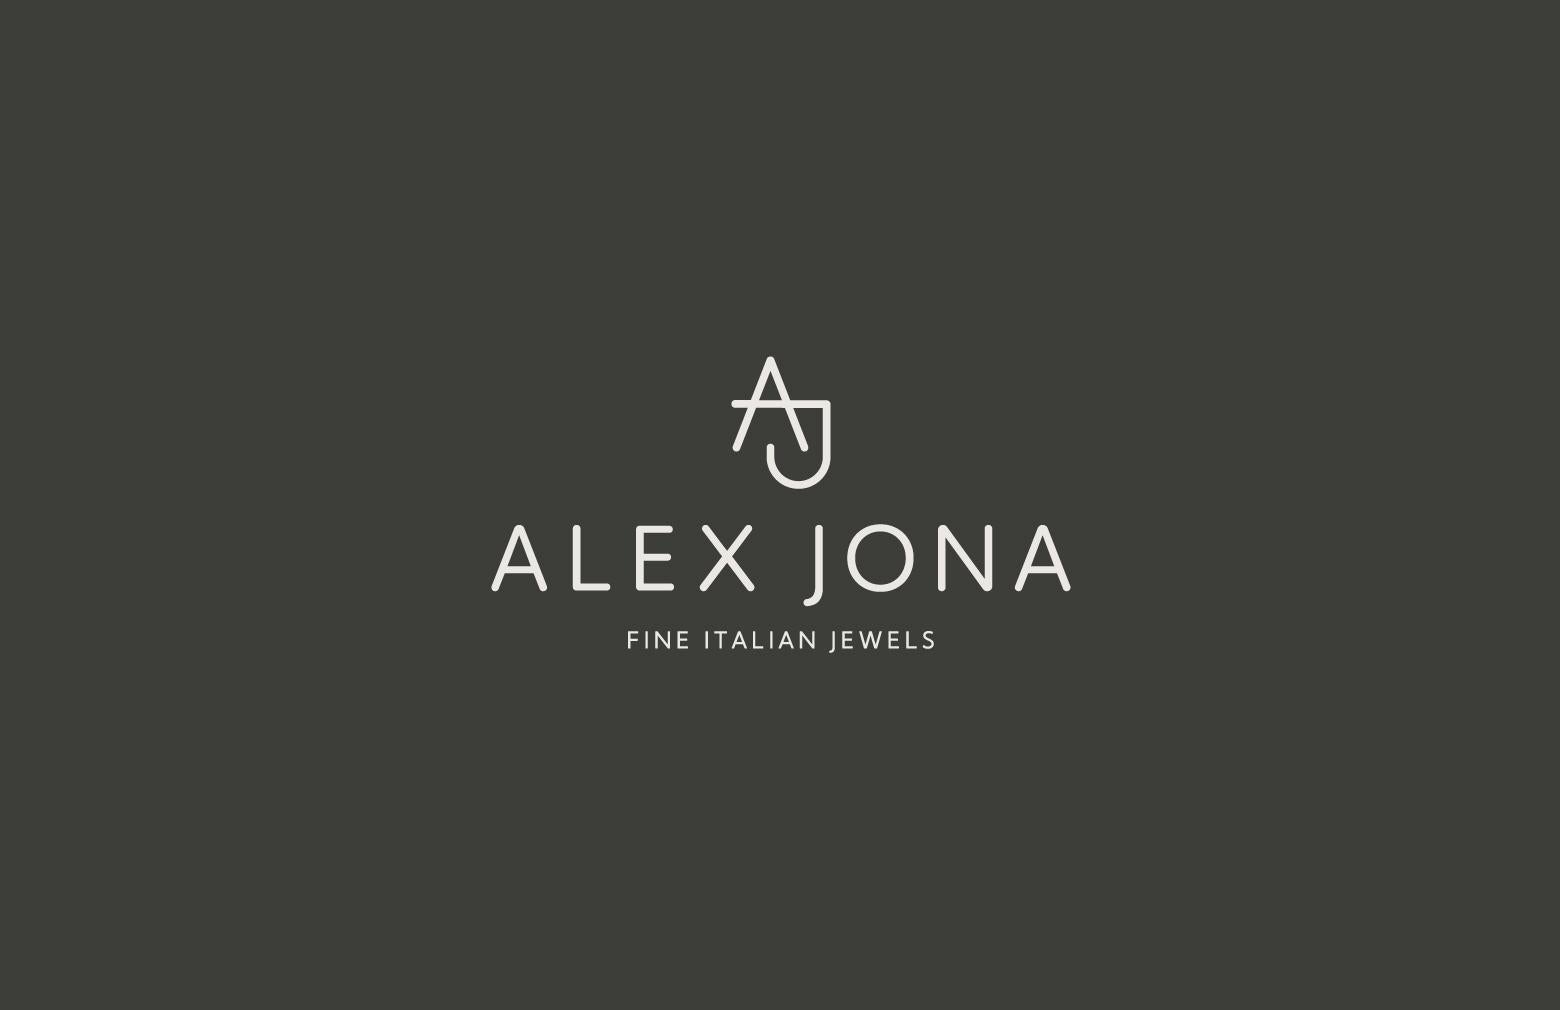 Alex Jona Moonstone White Diamond 18 Karat Rose Gold Pendant Earrings For Sale 6